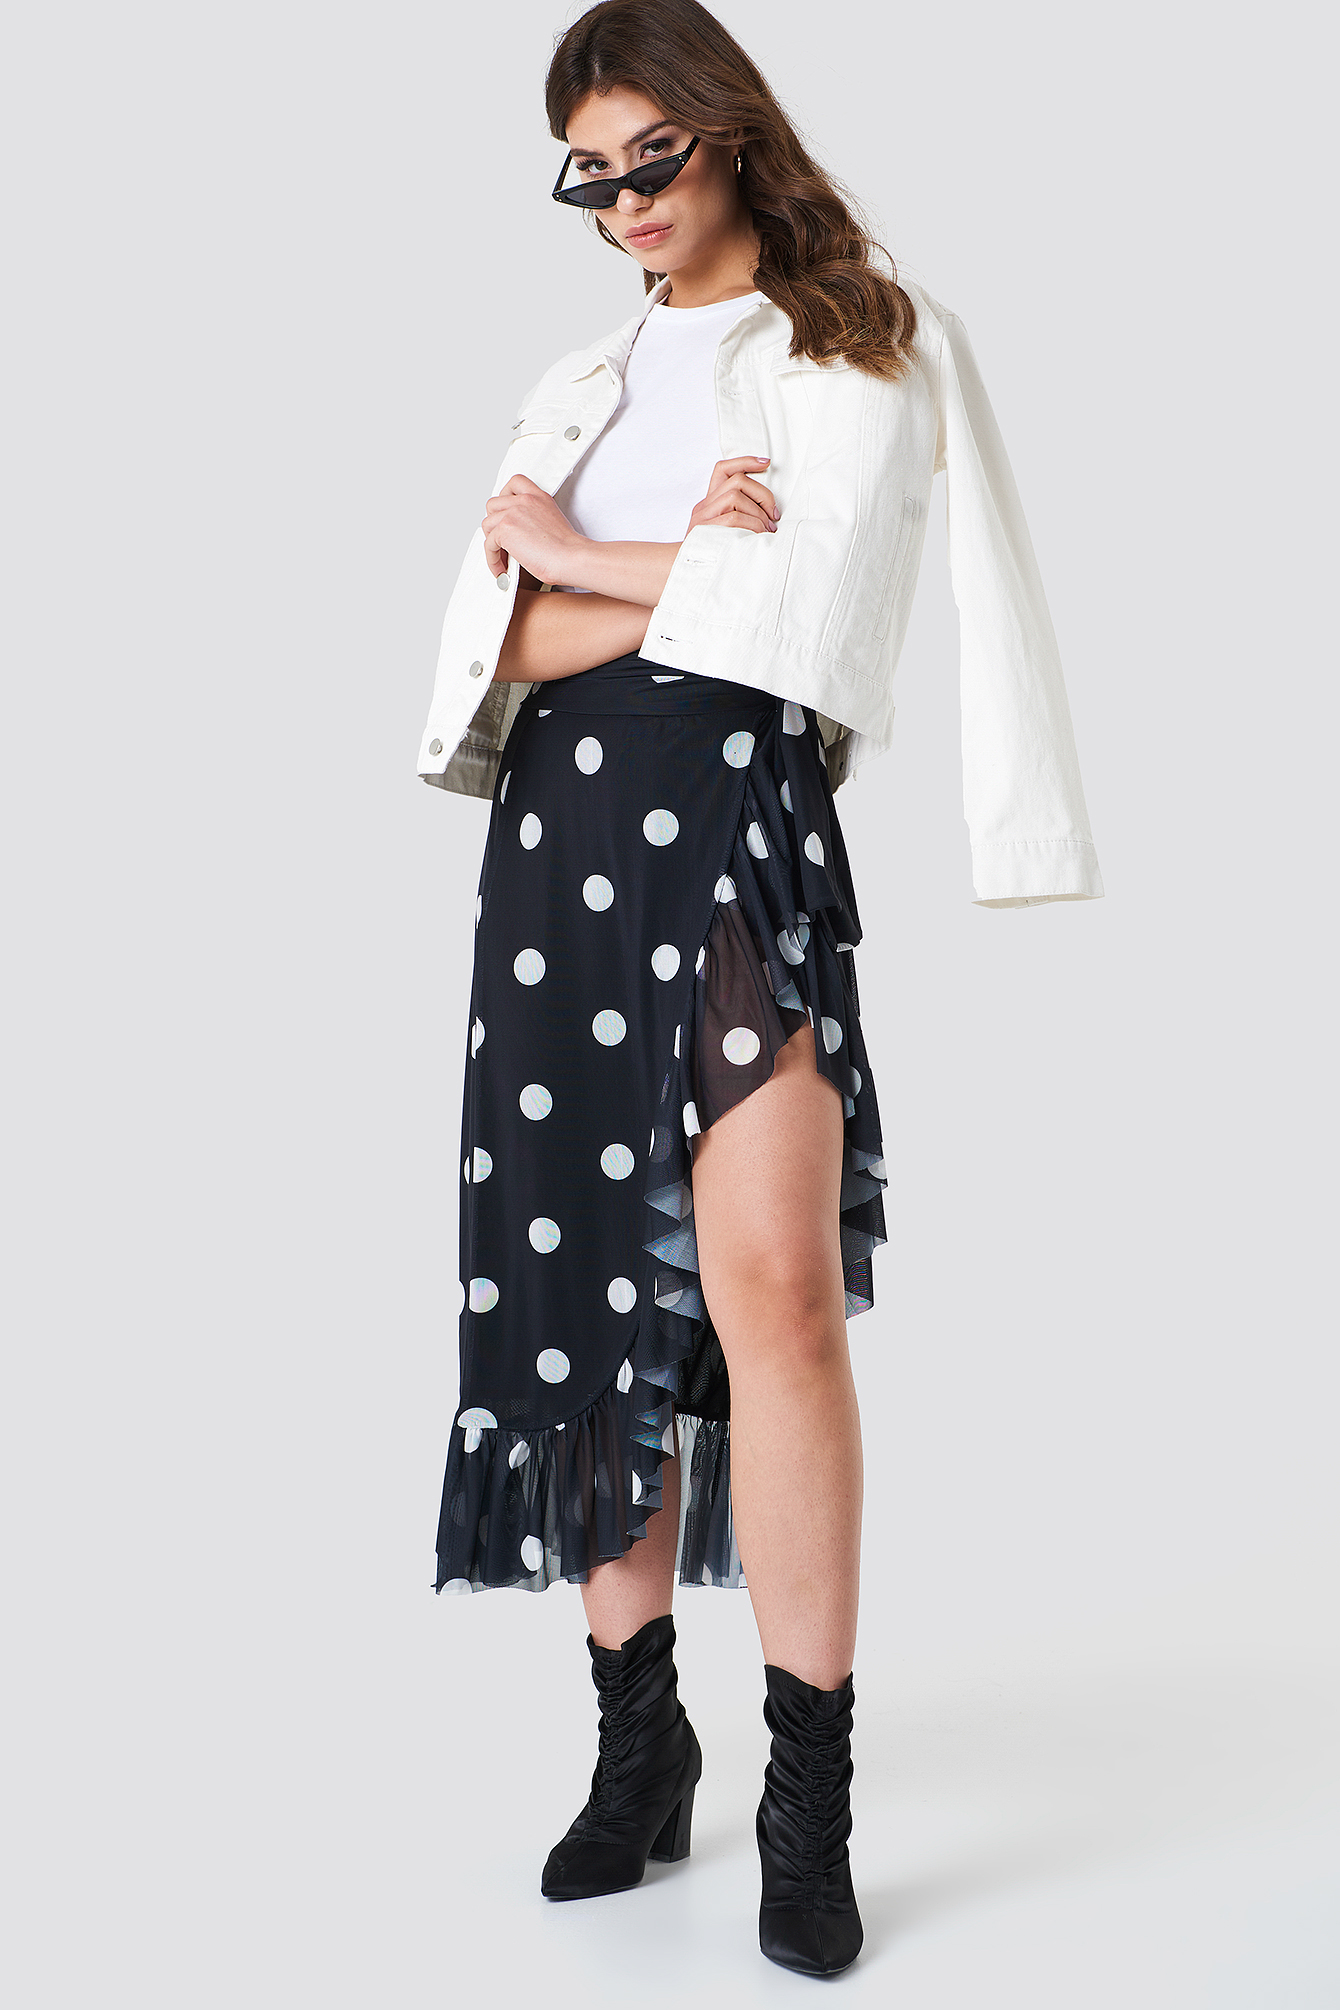 Black/White dots NA-KD Trend Mesh Overlap Maxi Skirt